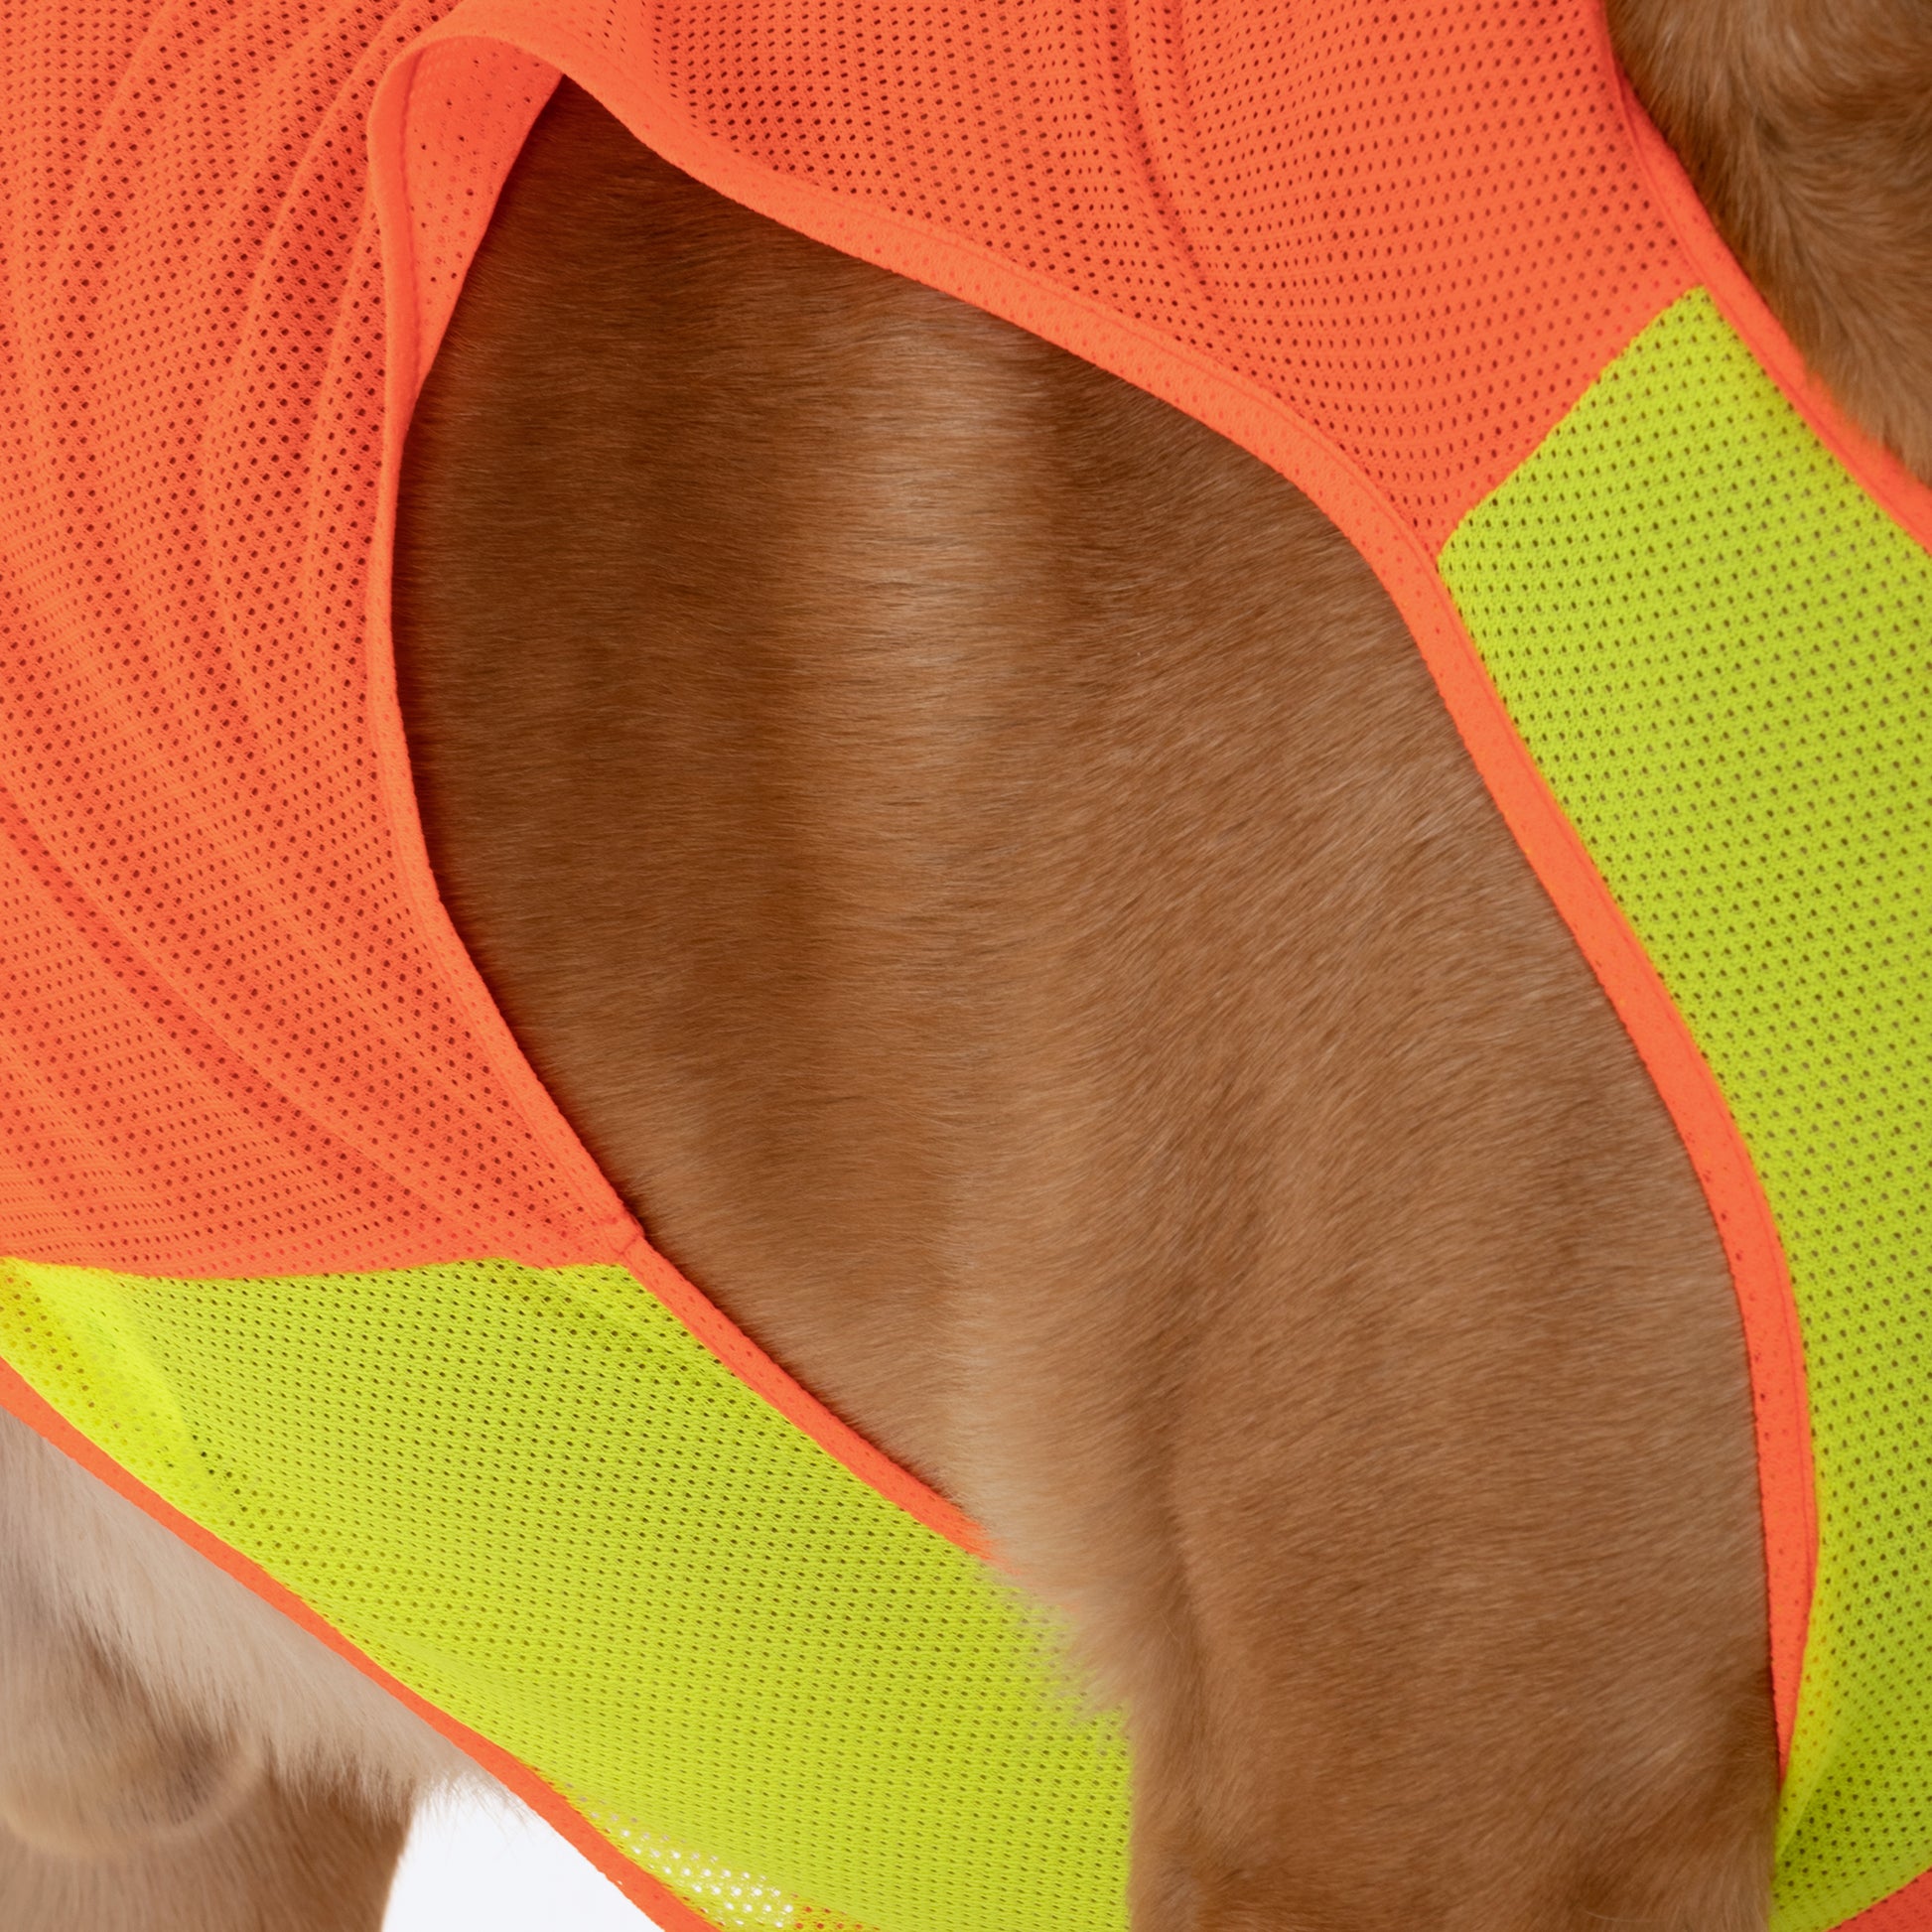 HUFT Neon Burst Vest For Dogs (Orange) - Heads Up For Tails